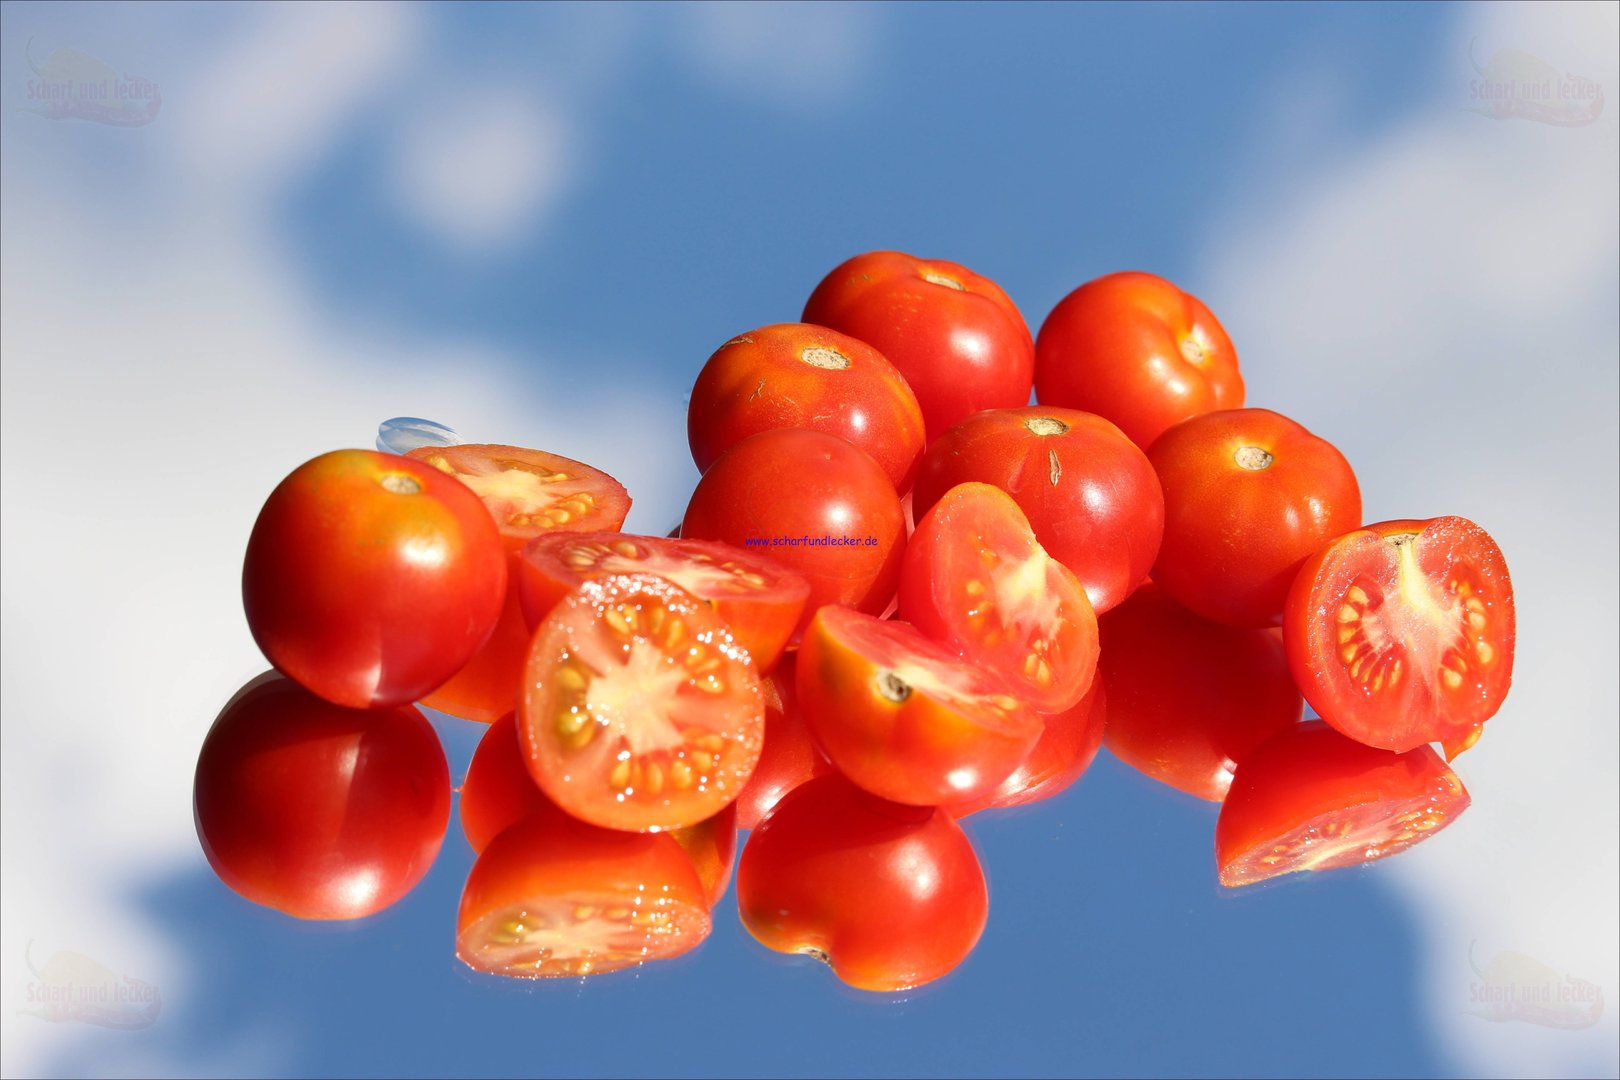 Enyanya eine aus Kenia stammende Tomate